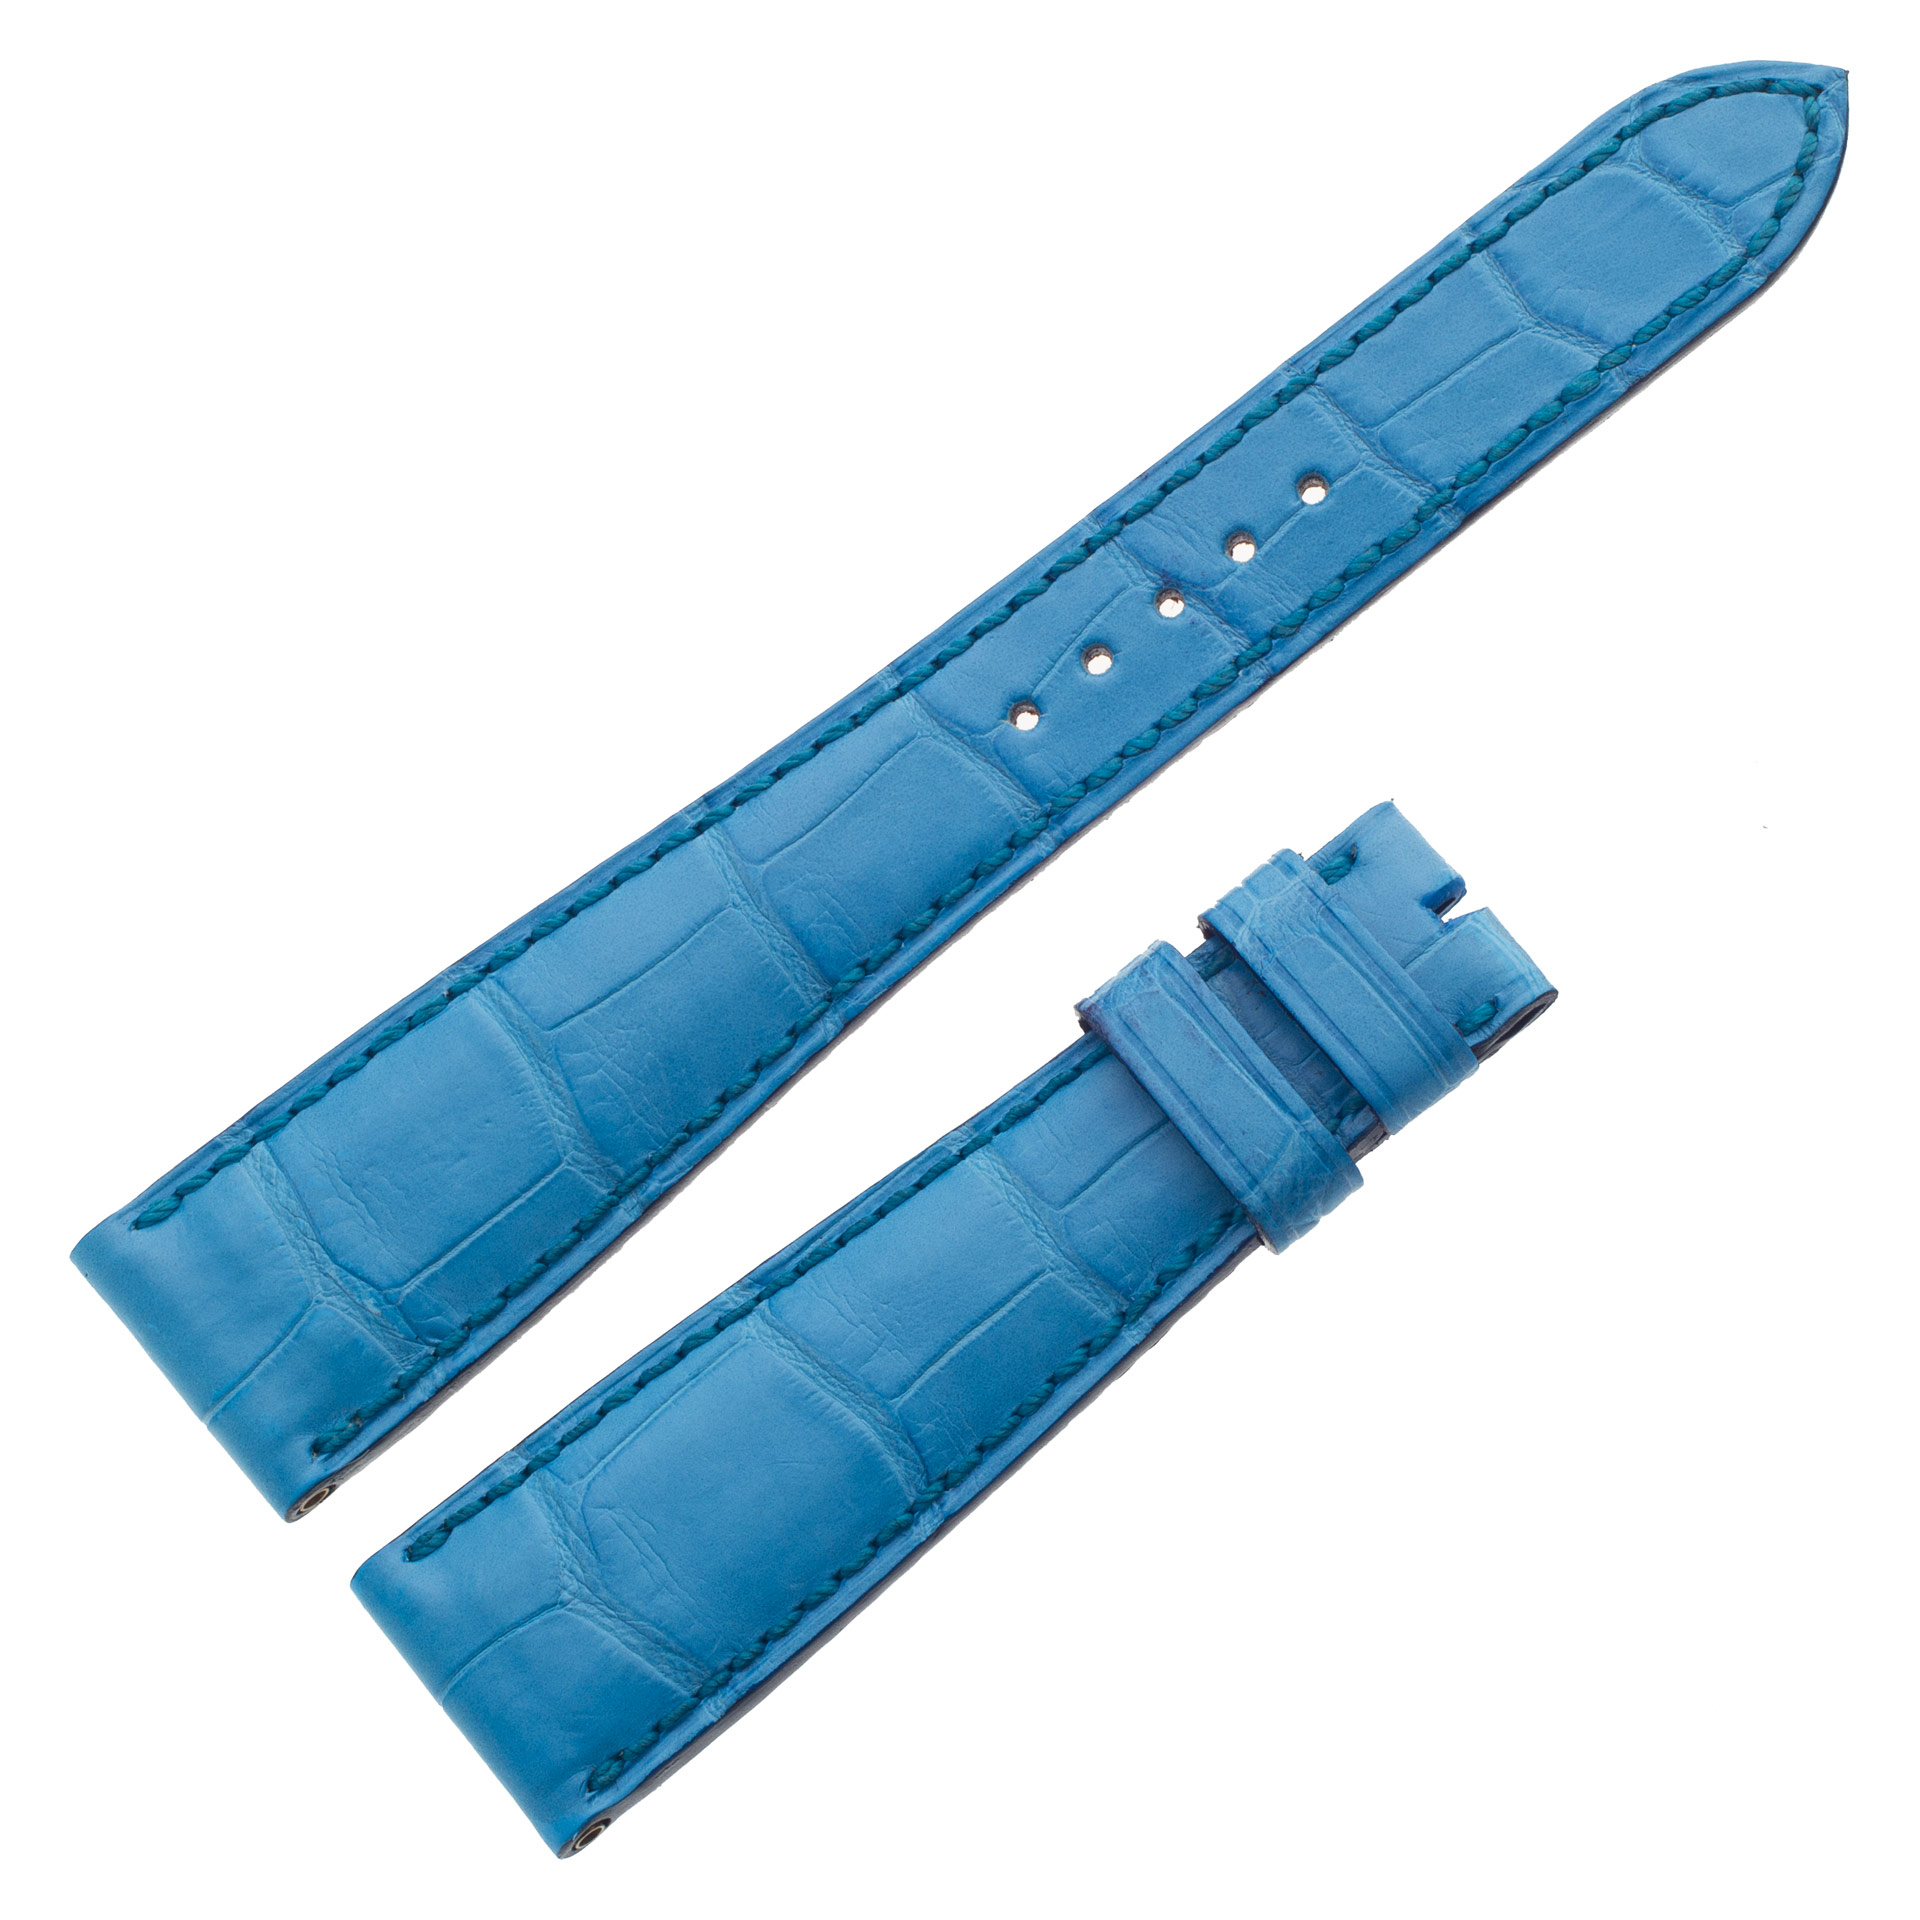 Roger Dubuis blue alligator strap at 19mm x 13mm image 1